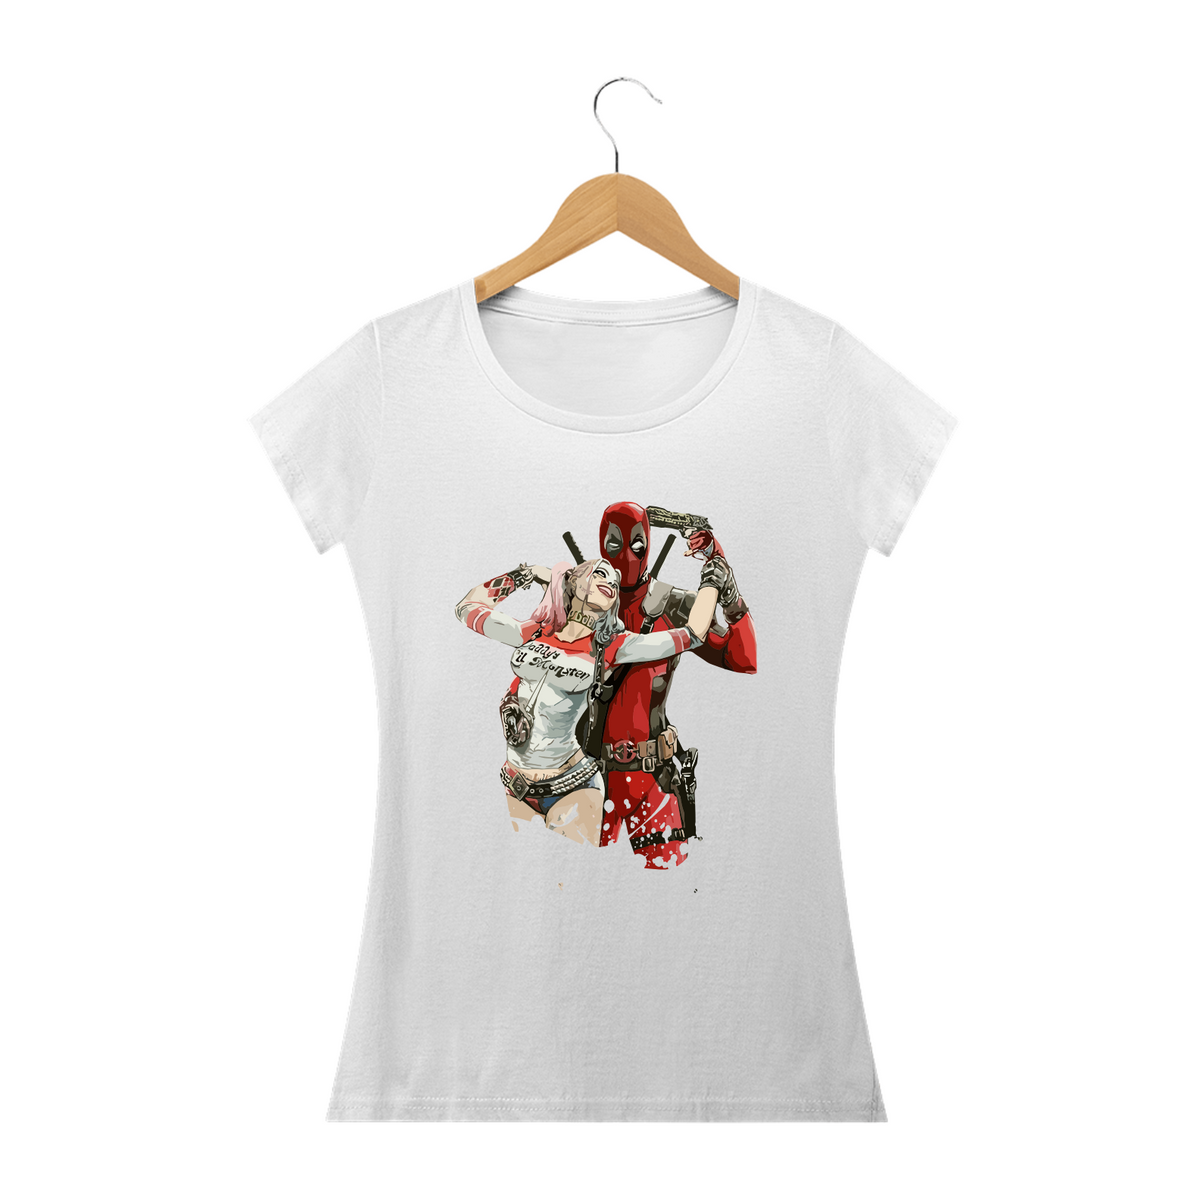 Nome do produto: ARLEQUINA & BOYFRIEND - Camiseta Feminina Personalizada com Estampa Geek